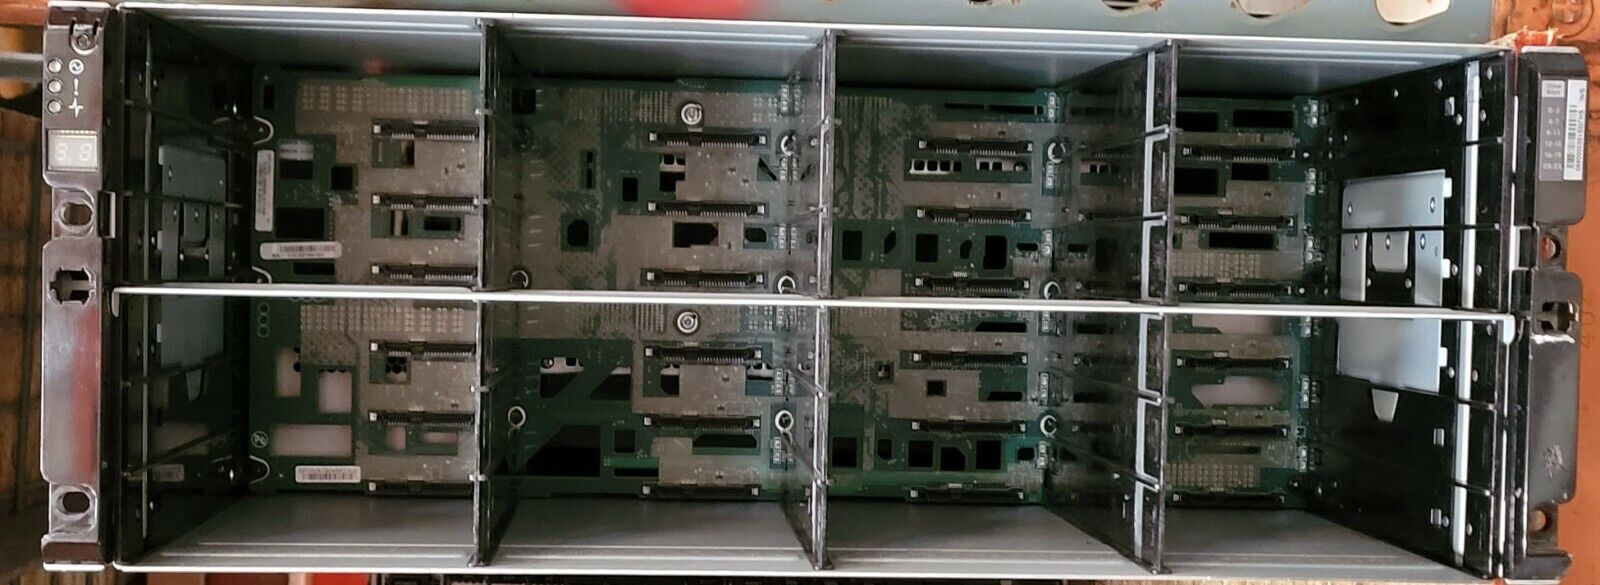 NetApp DS4243 Disk Array Shelf w/ 2x IOM3 Controllers 2x PSU JBOD; CHIA; Storage